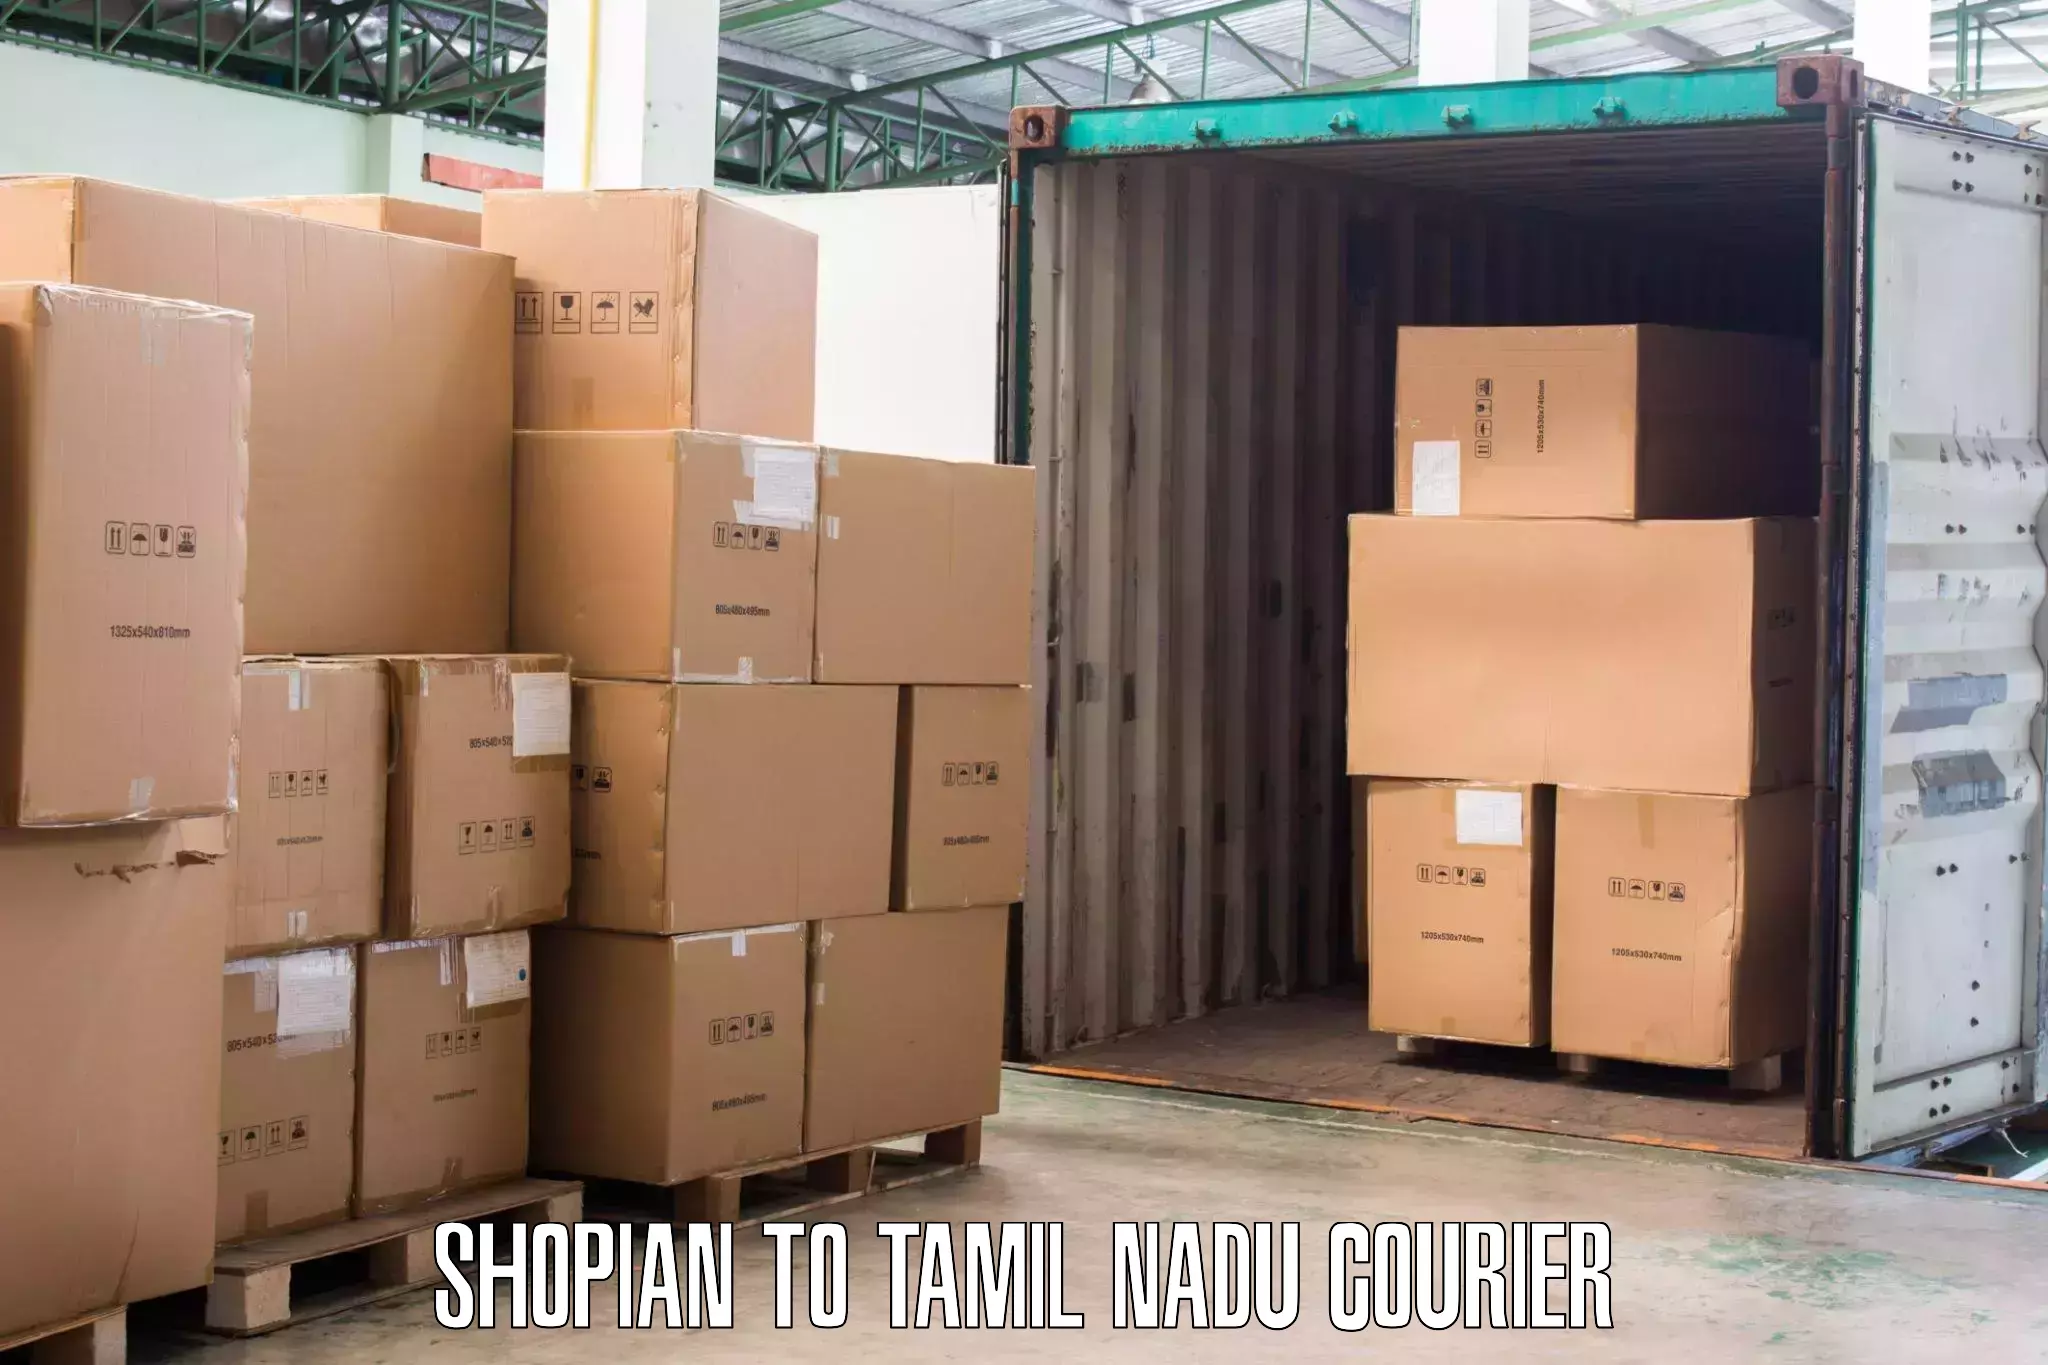 Professional furniture movers Shopian to Udumalaipettai